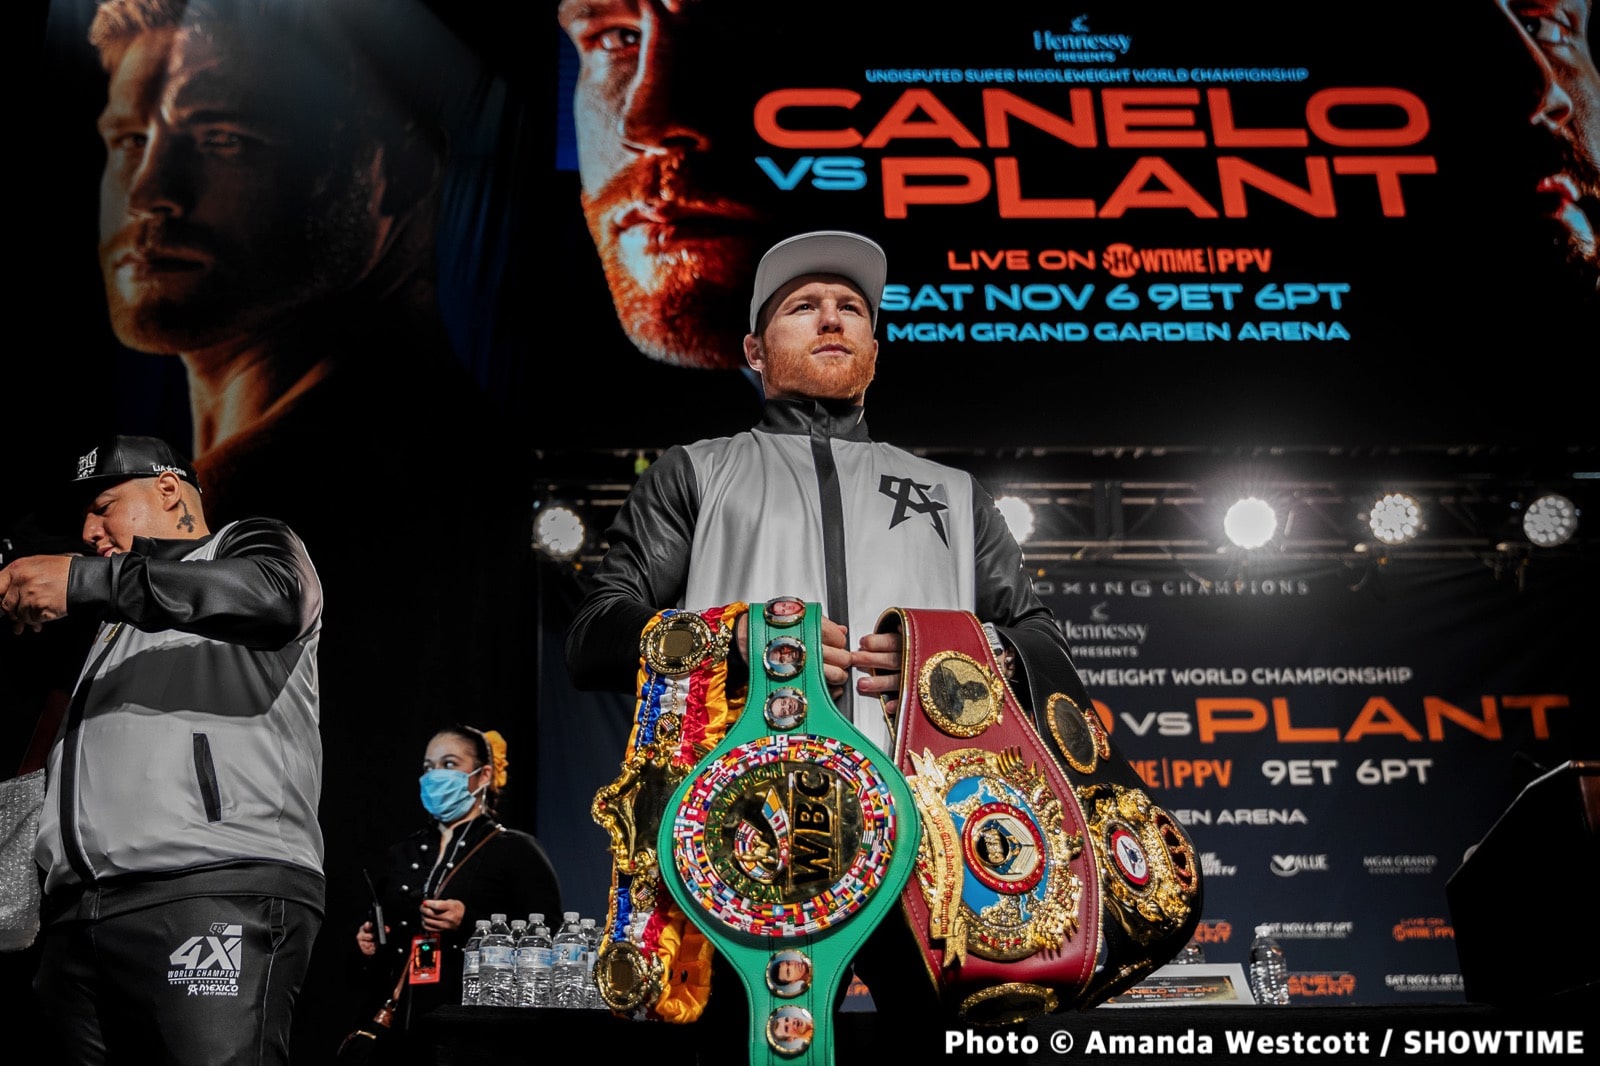 Caleb Plant, Canelo Alvarez boxing image / photo